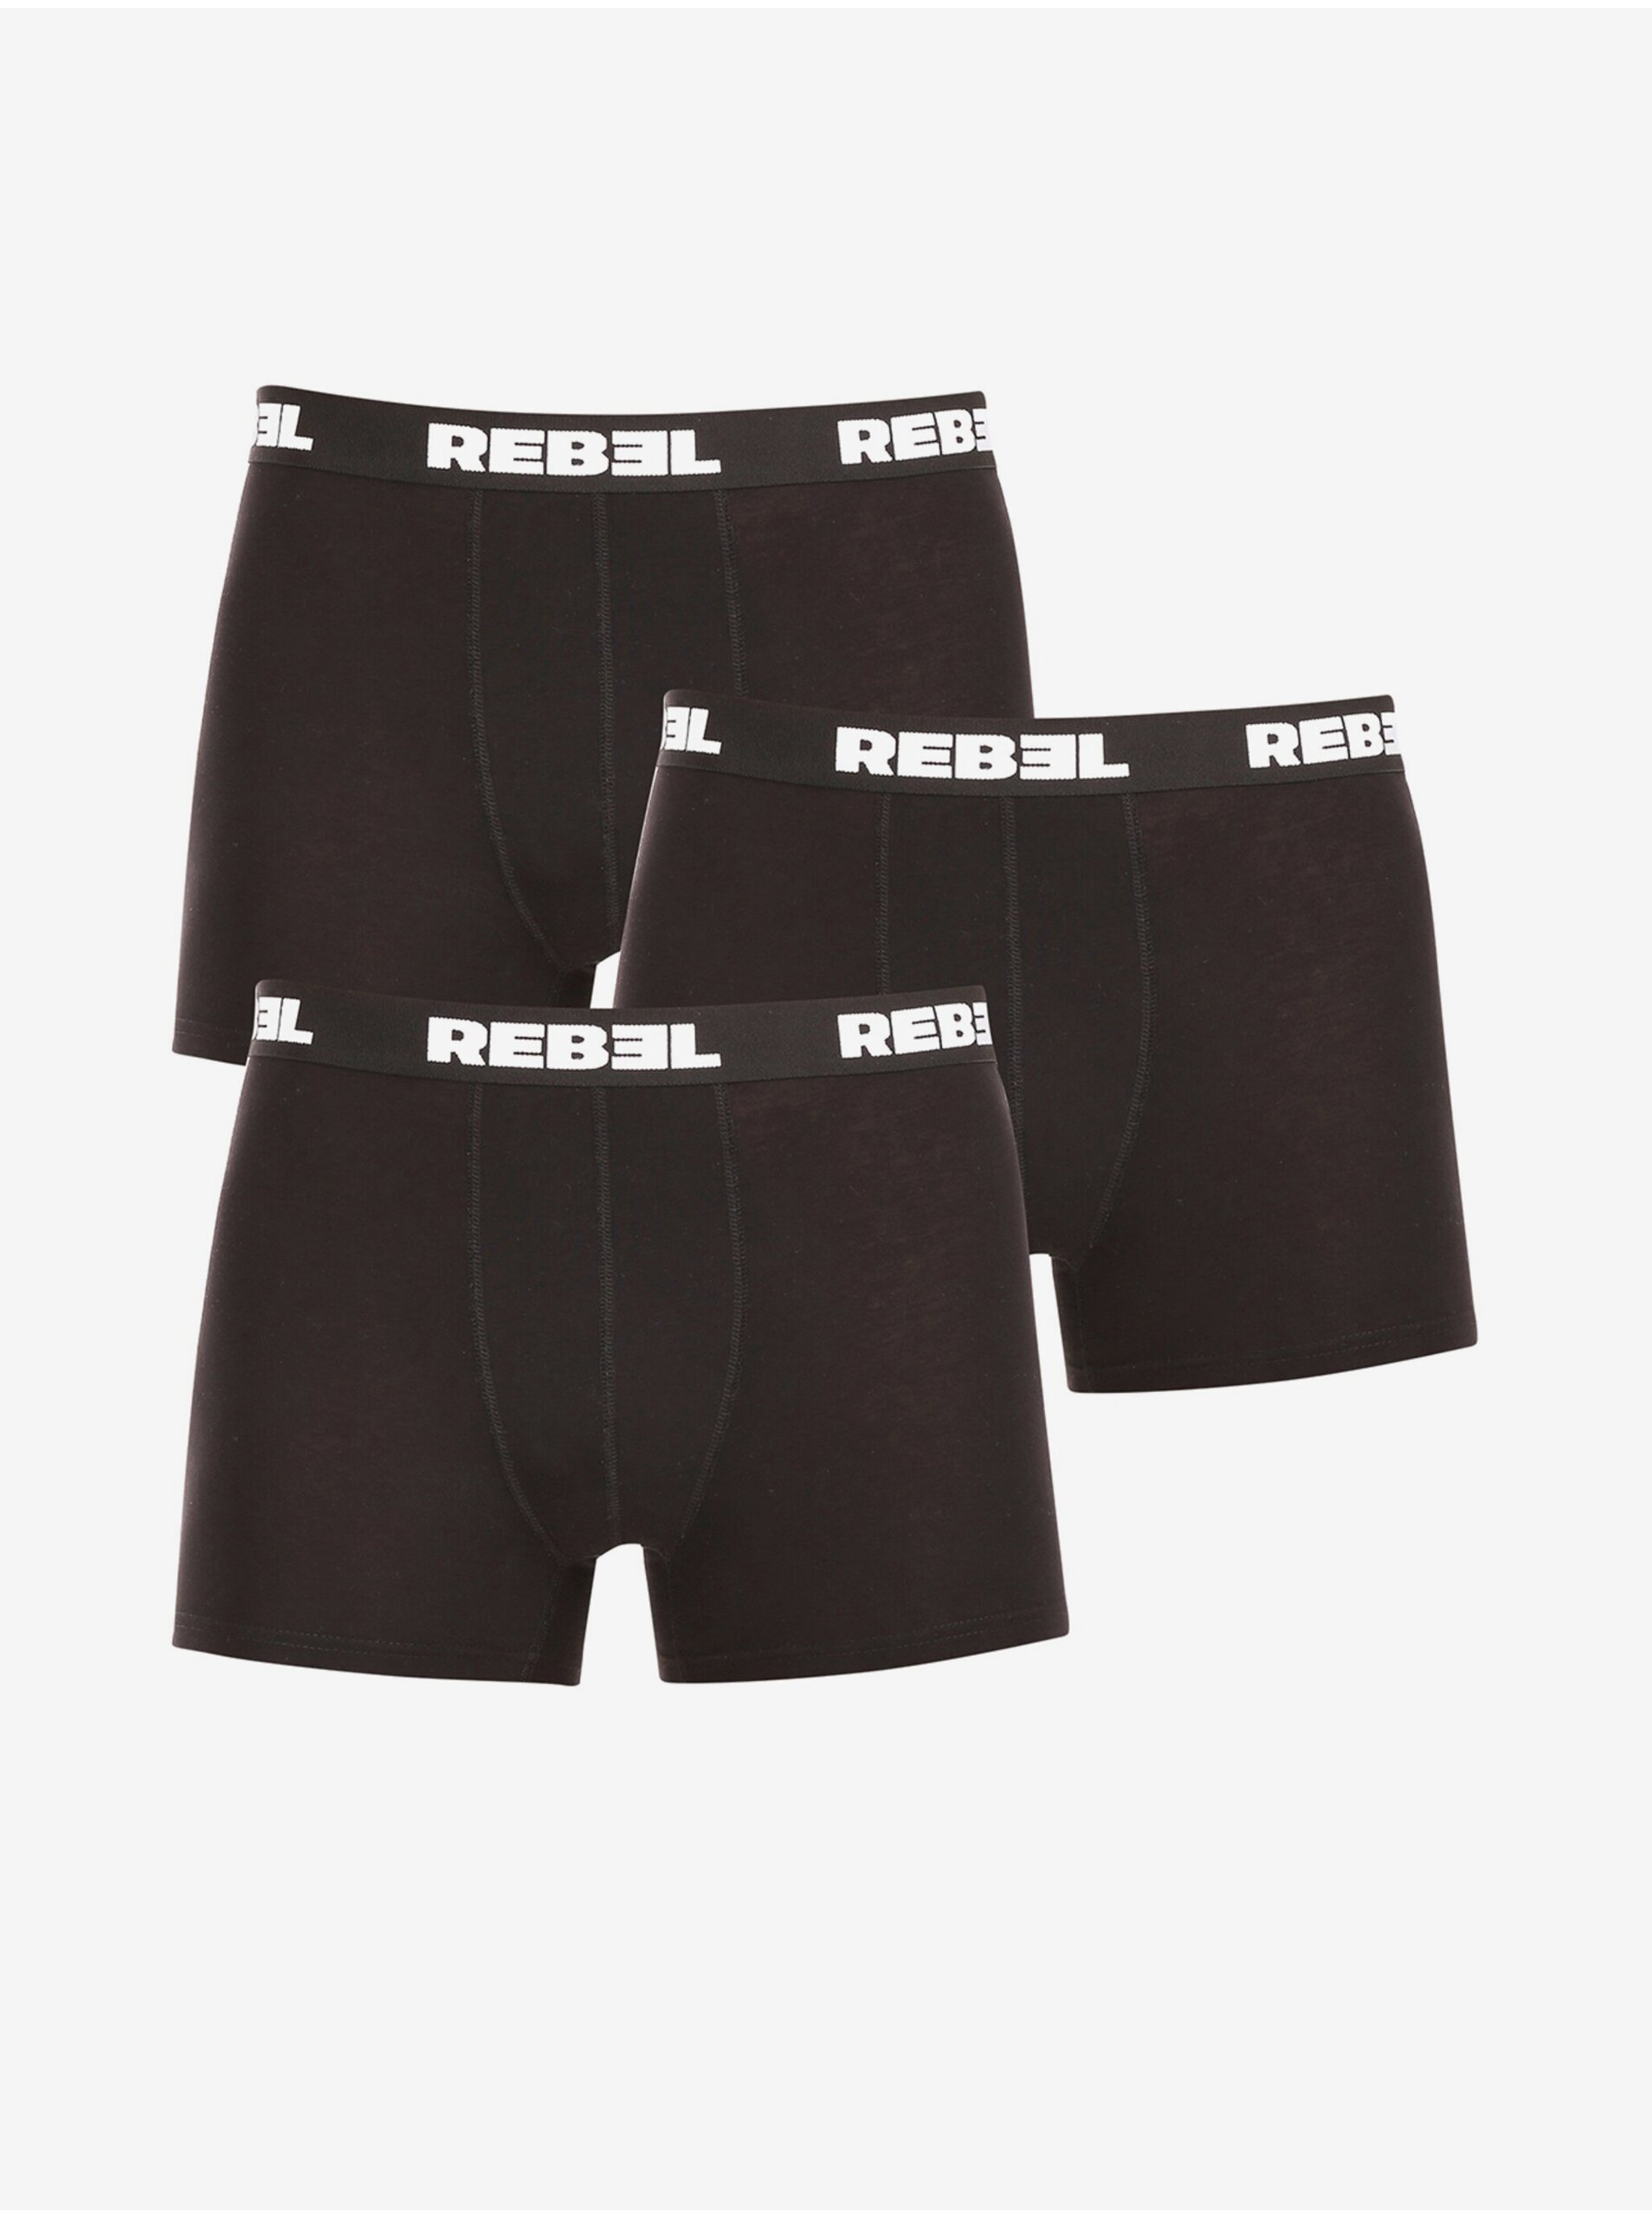 E-shop Sada troch pánskych boxeriek v čiernej farbe Nedeto Rebel